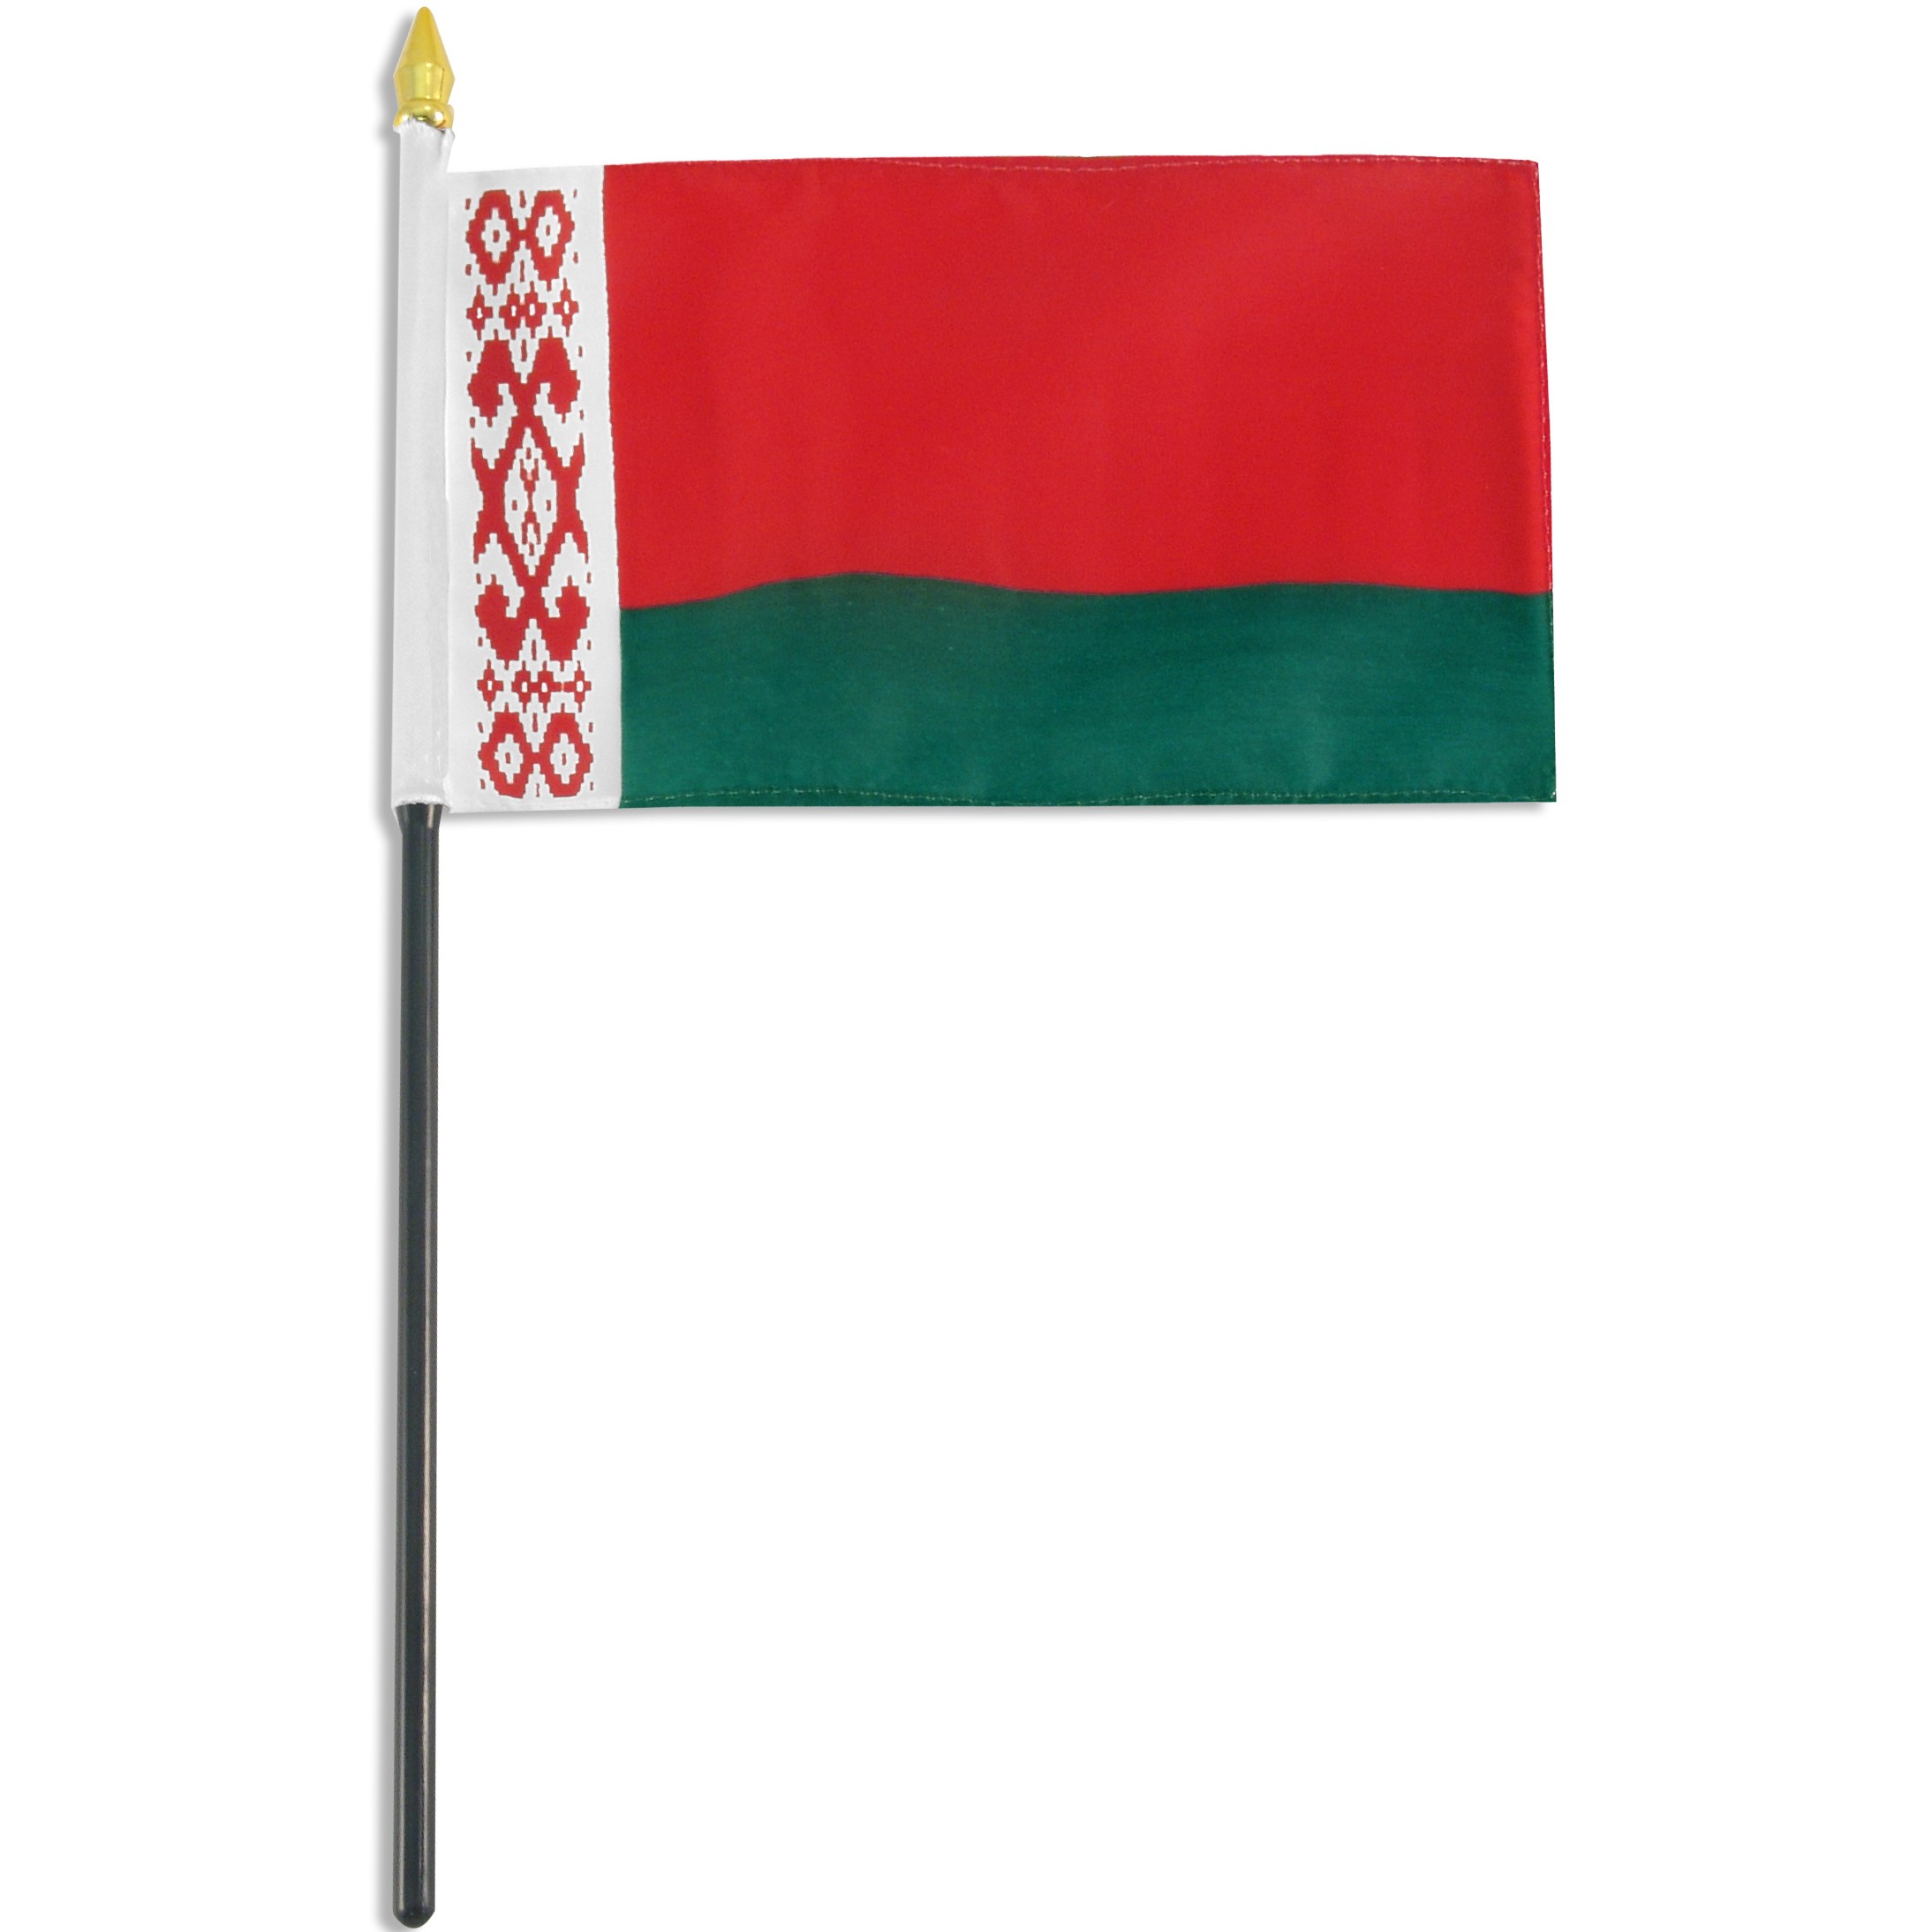 wby46hf_-00_belarus-flag-4-x-6-inch_1